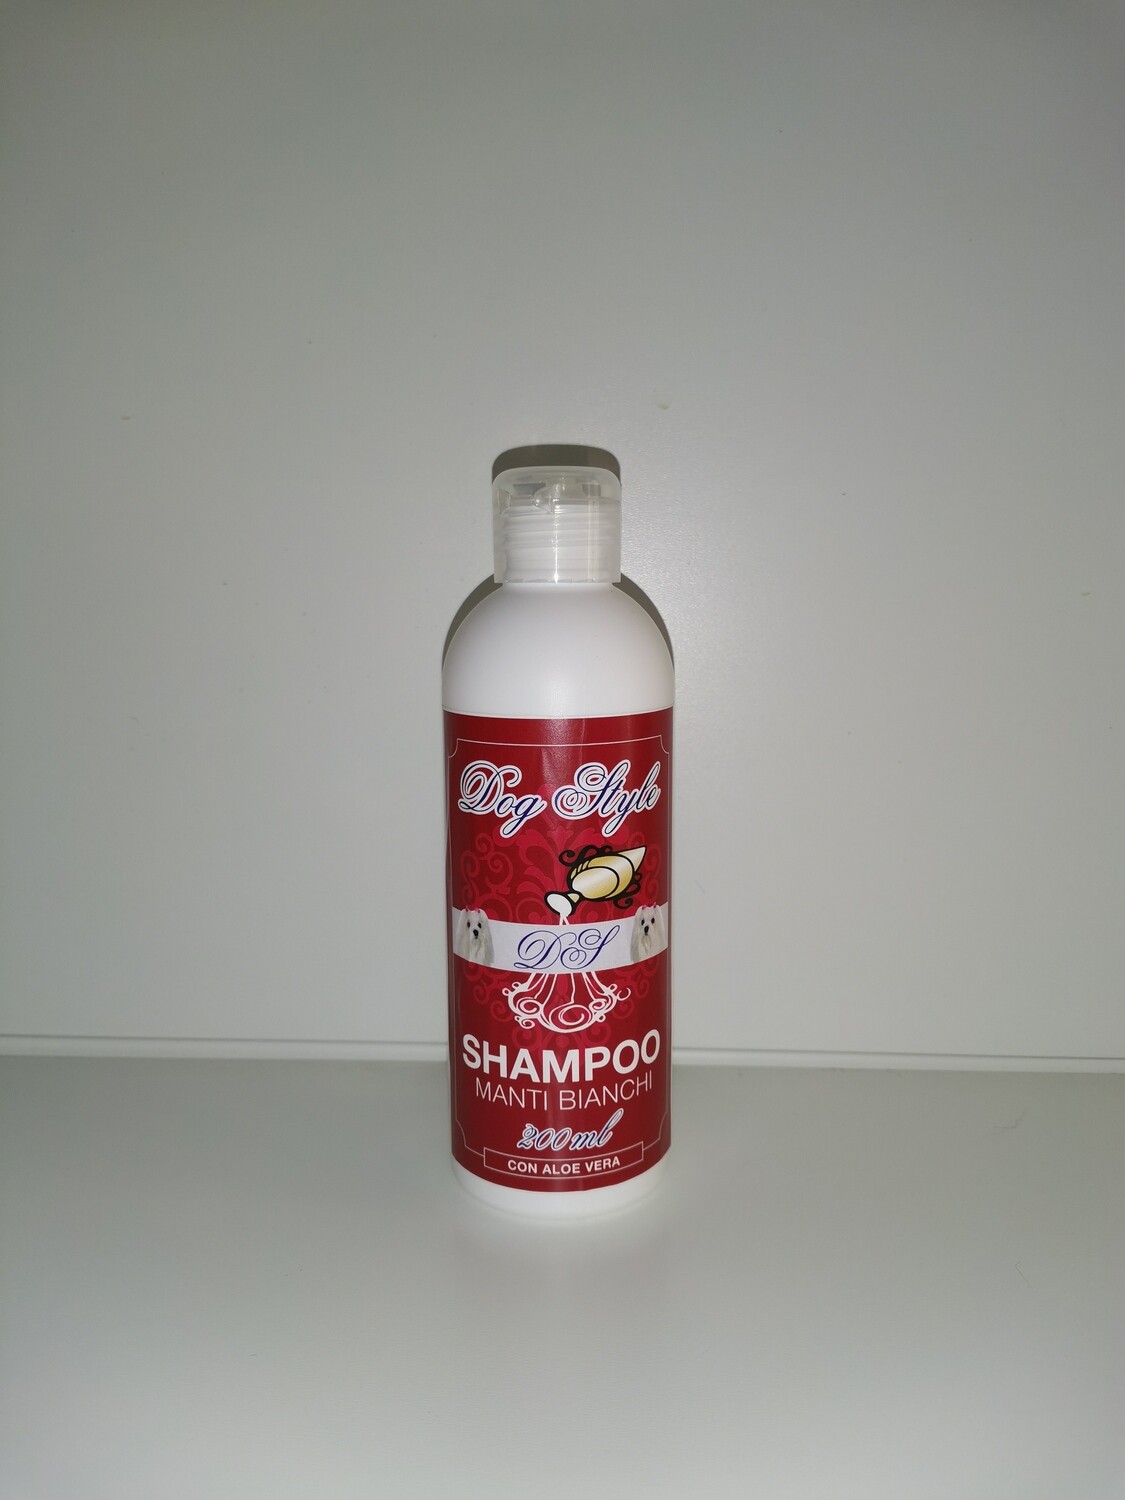 Shampoo manti bianchi con aloe vera